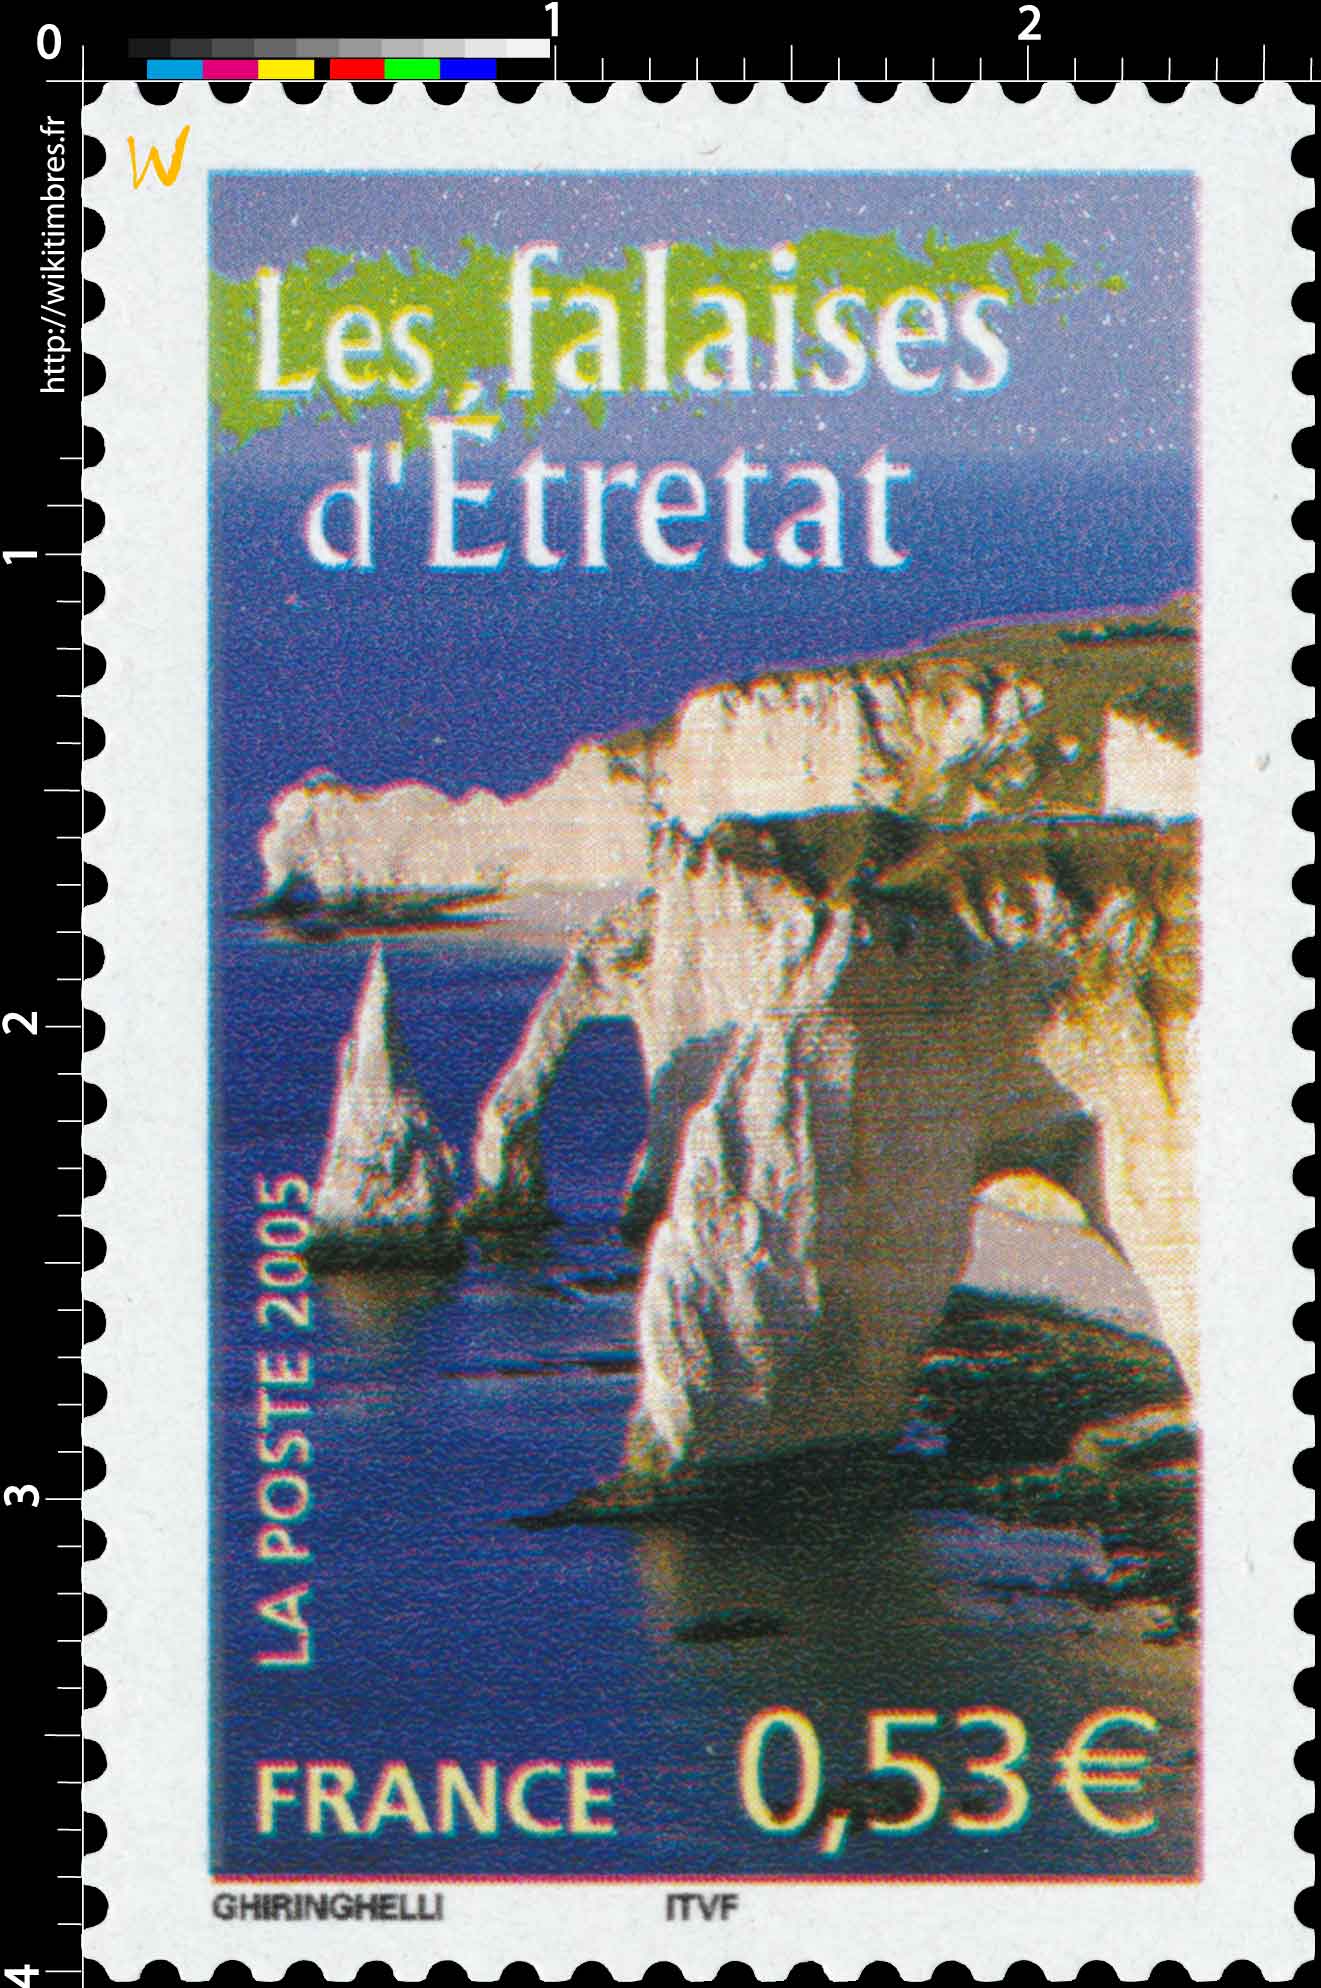 2005 Les falaises d'Étretat